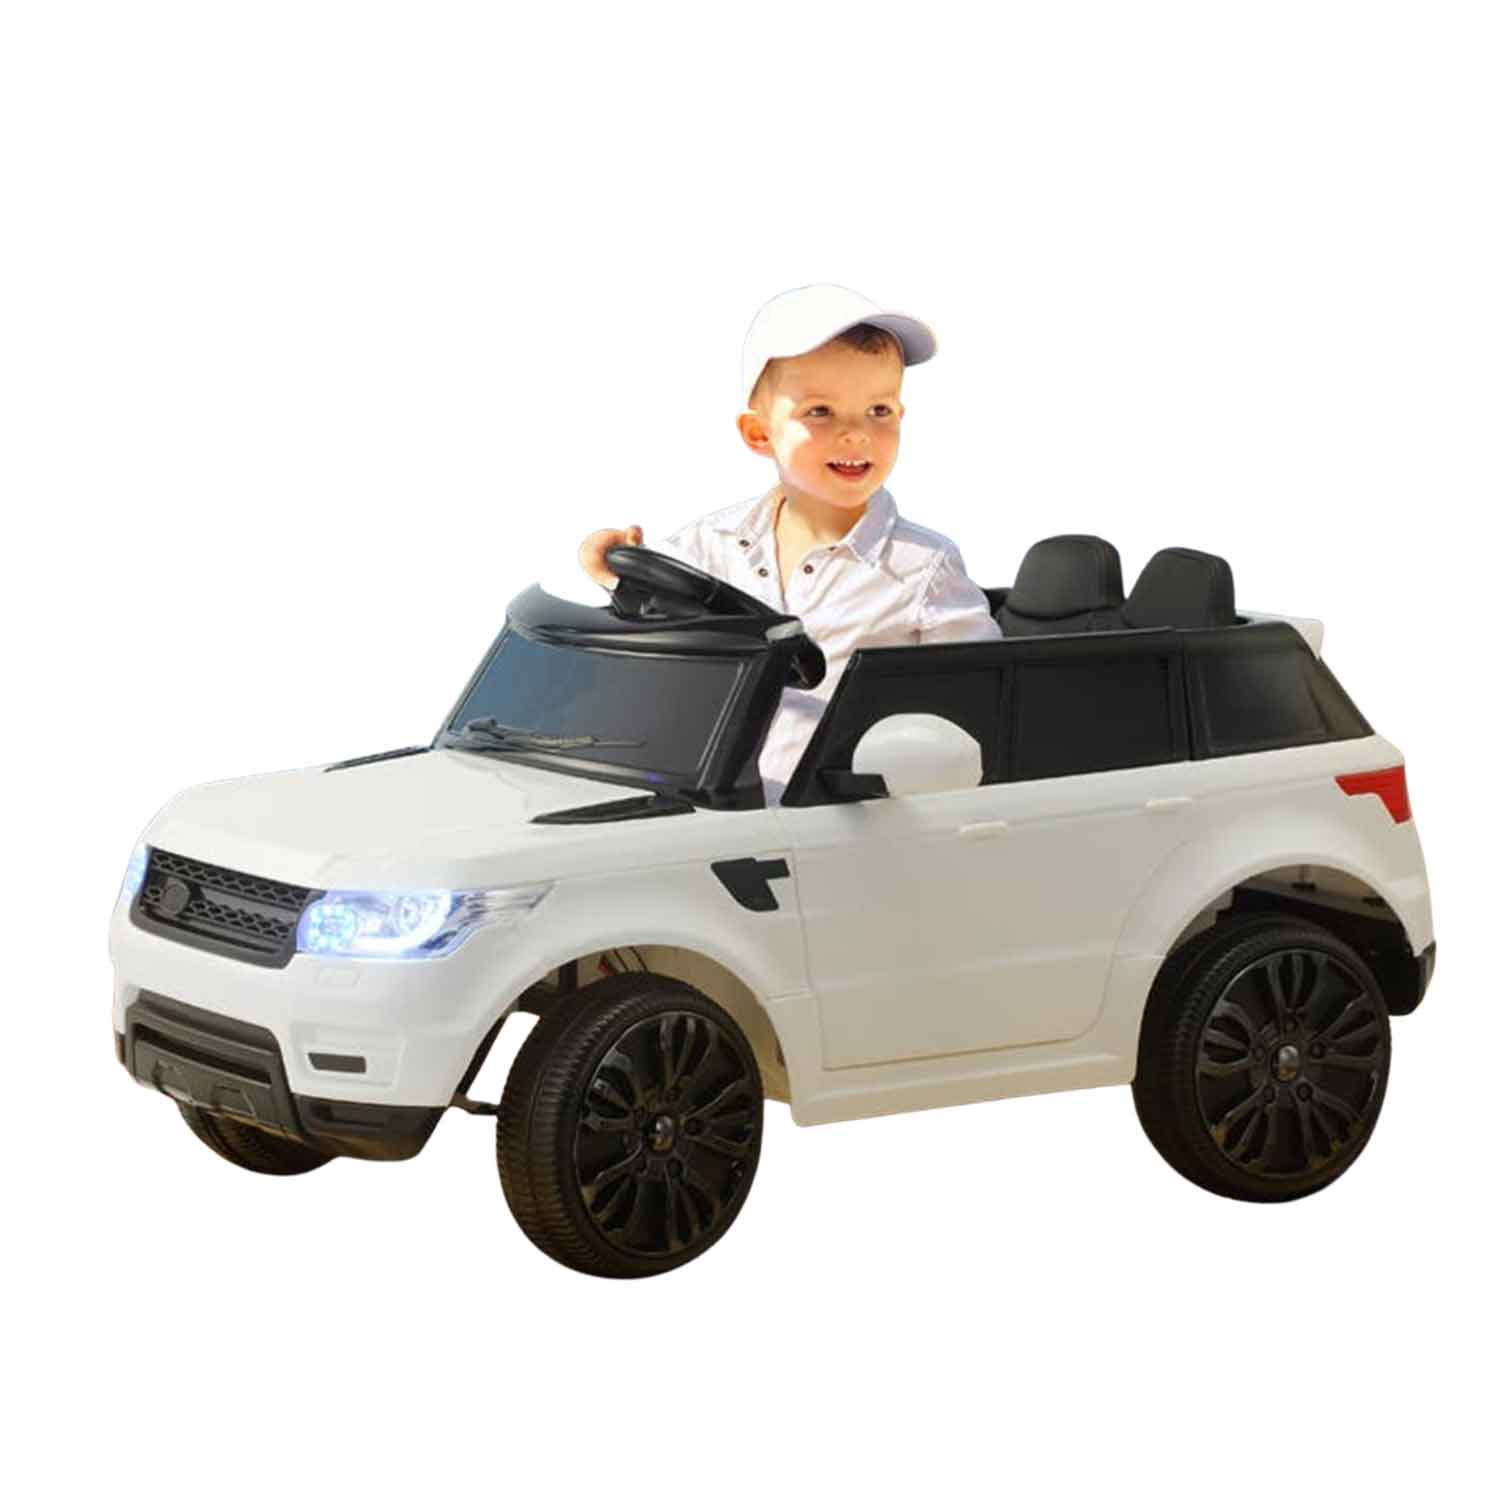 Megastar Ride on Small Car Toy Range Rover SUV 12V